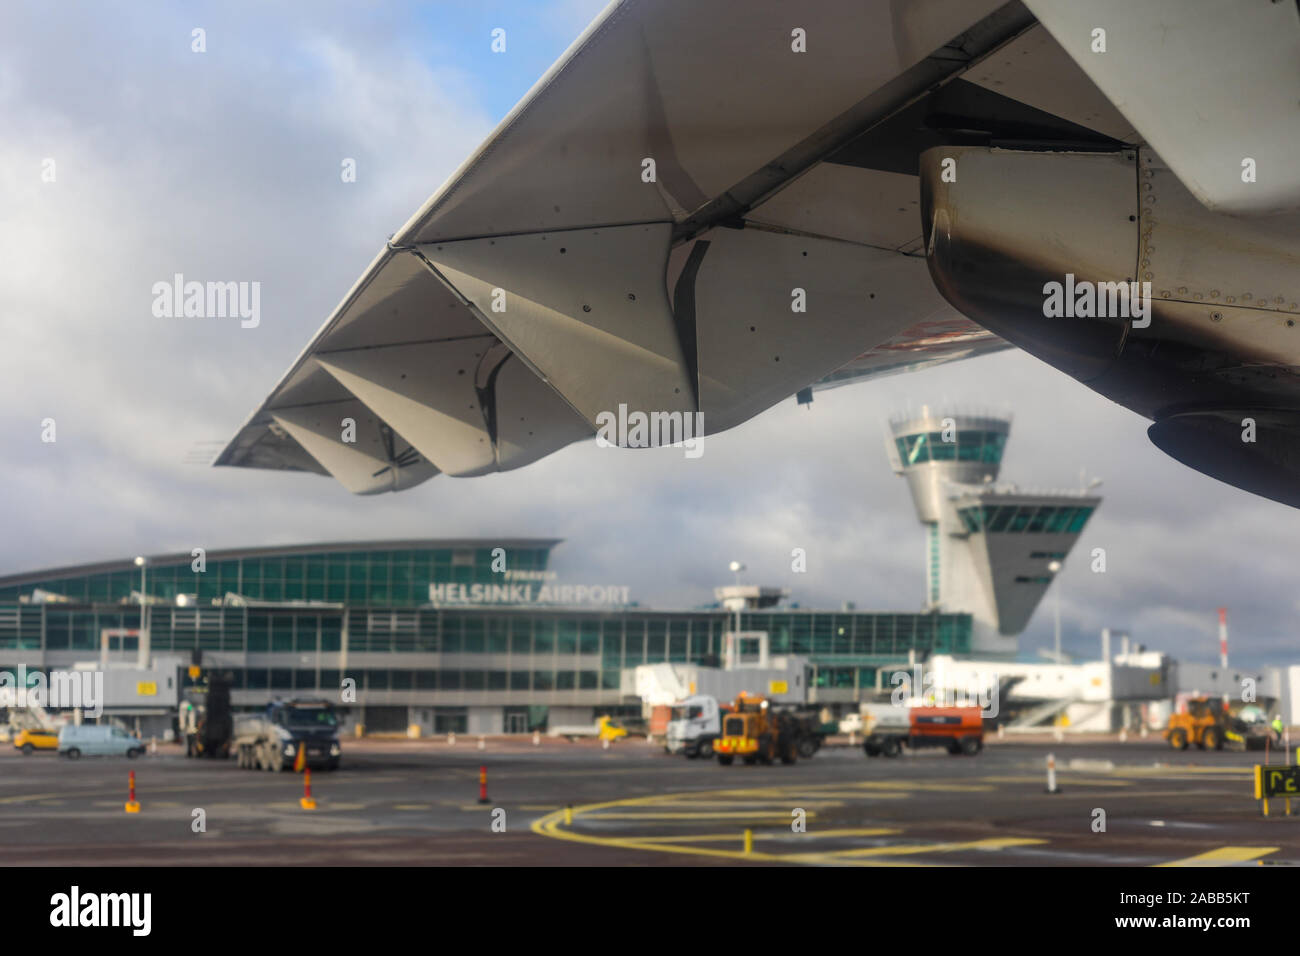 L'aéroport d'Helsinki encadrée par aile d'avion, selective focus Banque D'Images